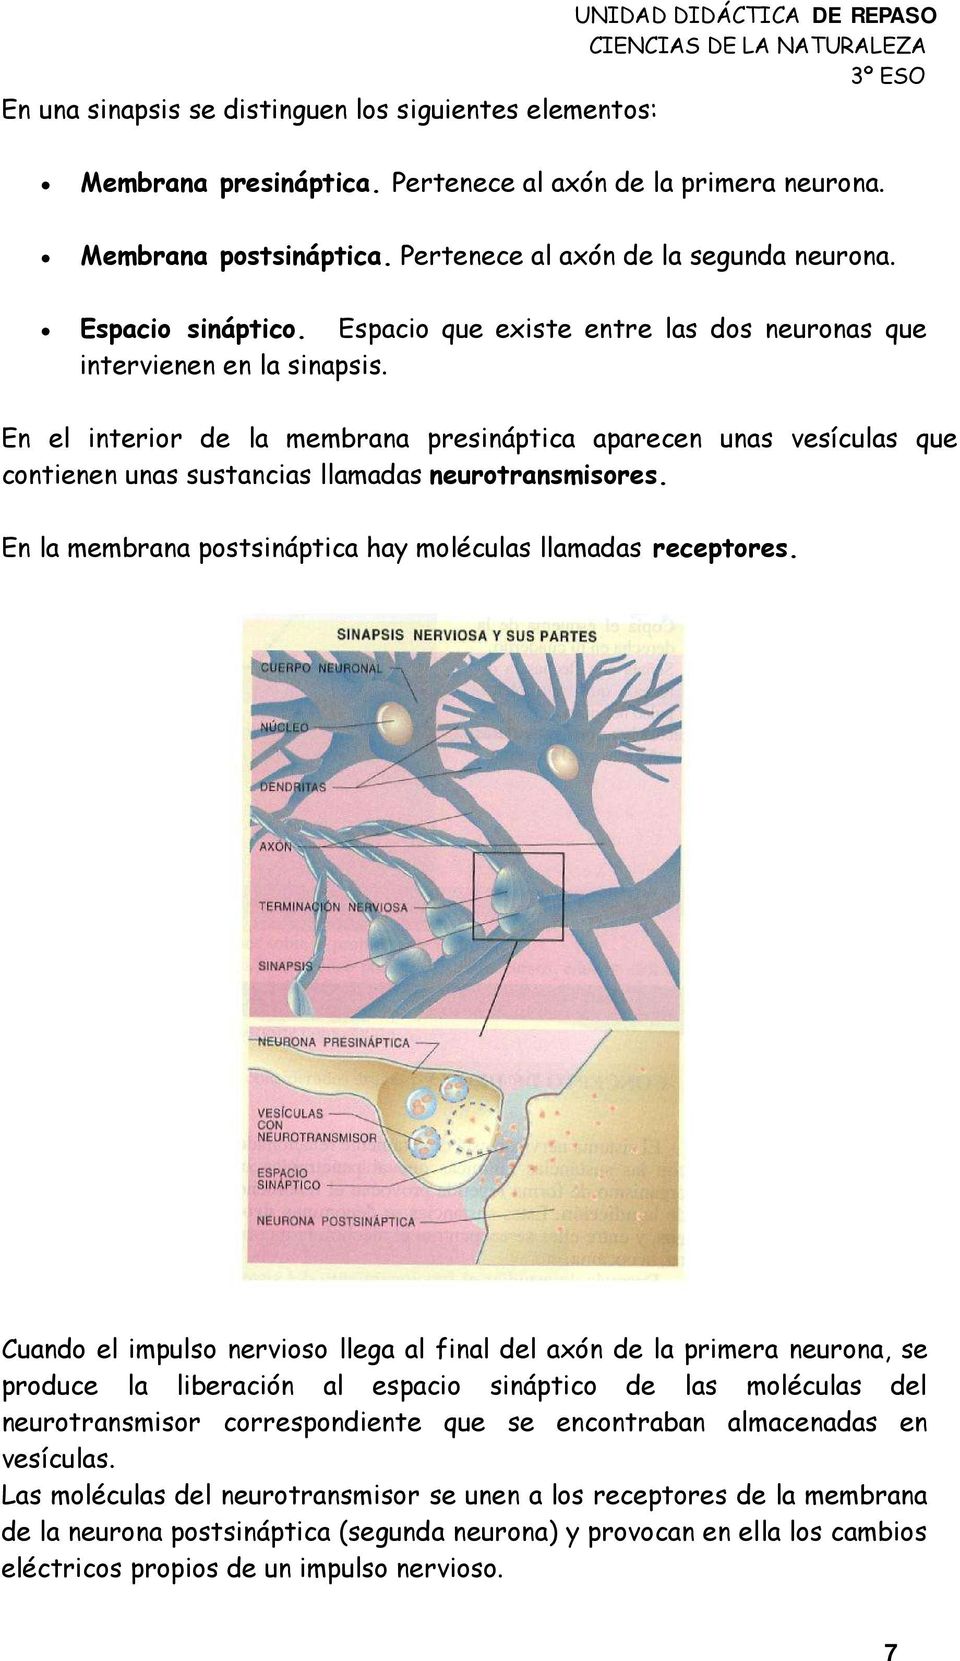 En el interior de la membrana presináptica aparecen unas vesículas que contienen unas sustancias llamadas neurotransmisores. En la membrana postsináptica hay moléculas llamadas receptores.